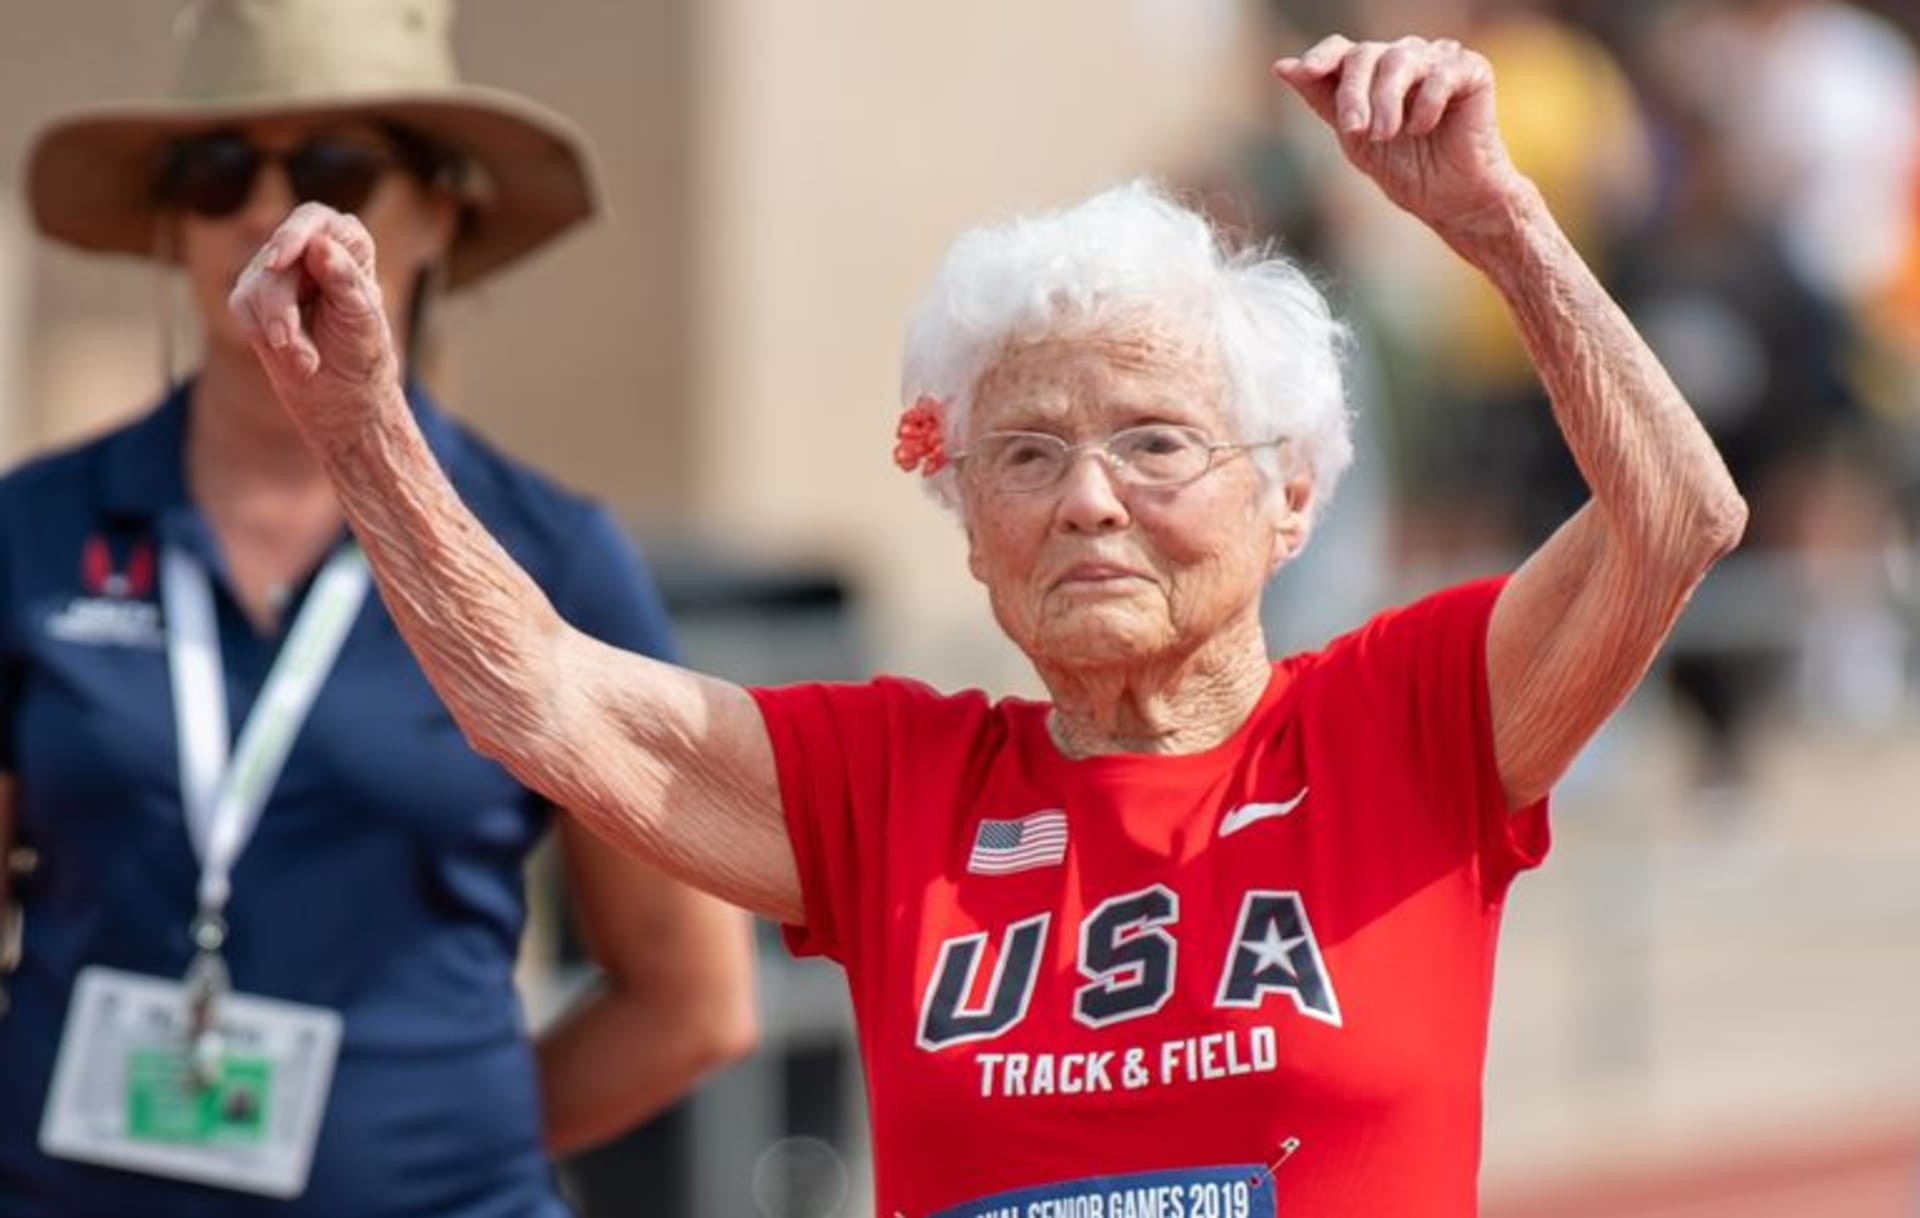 Běhající babička ohromuje svět: Ve 103 letech vyhrává závody a užívá si naplno života